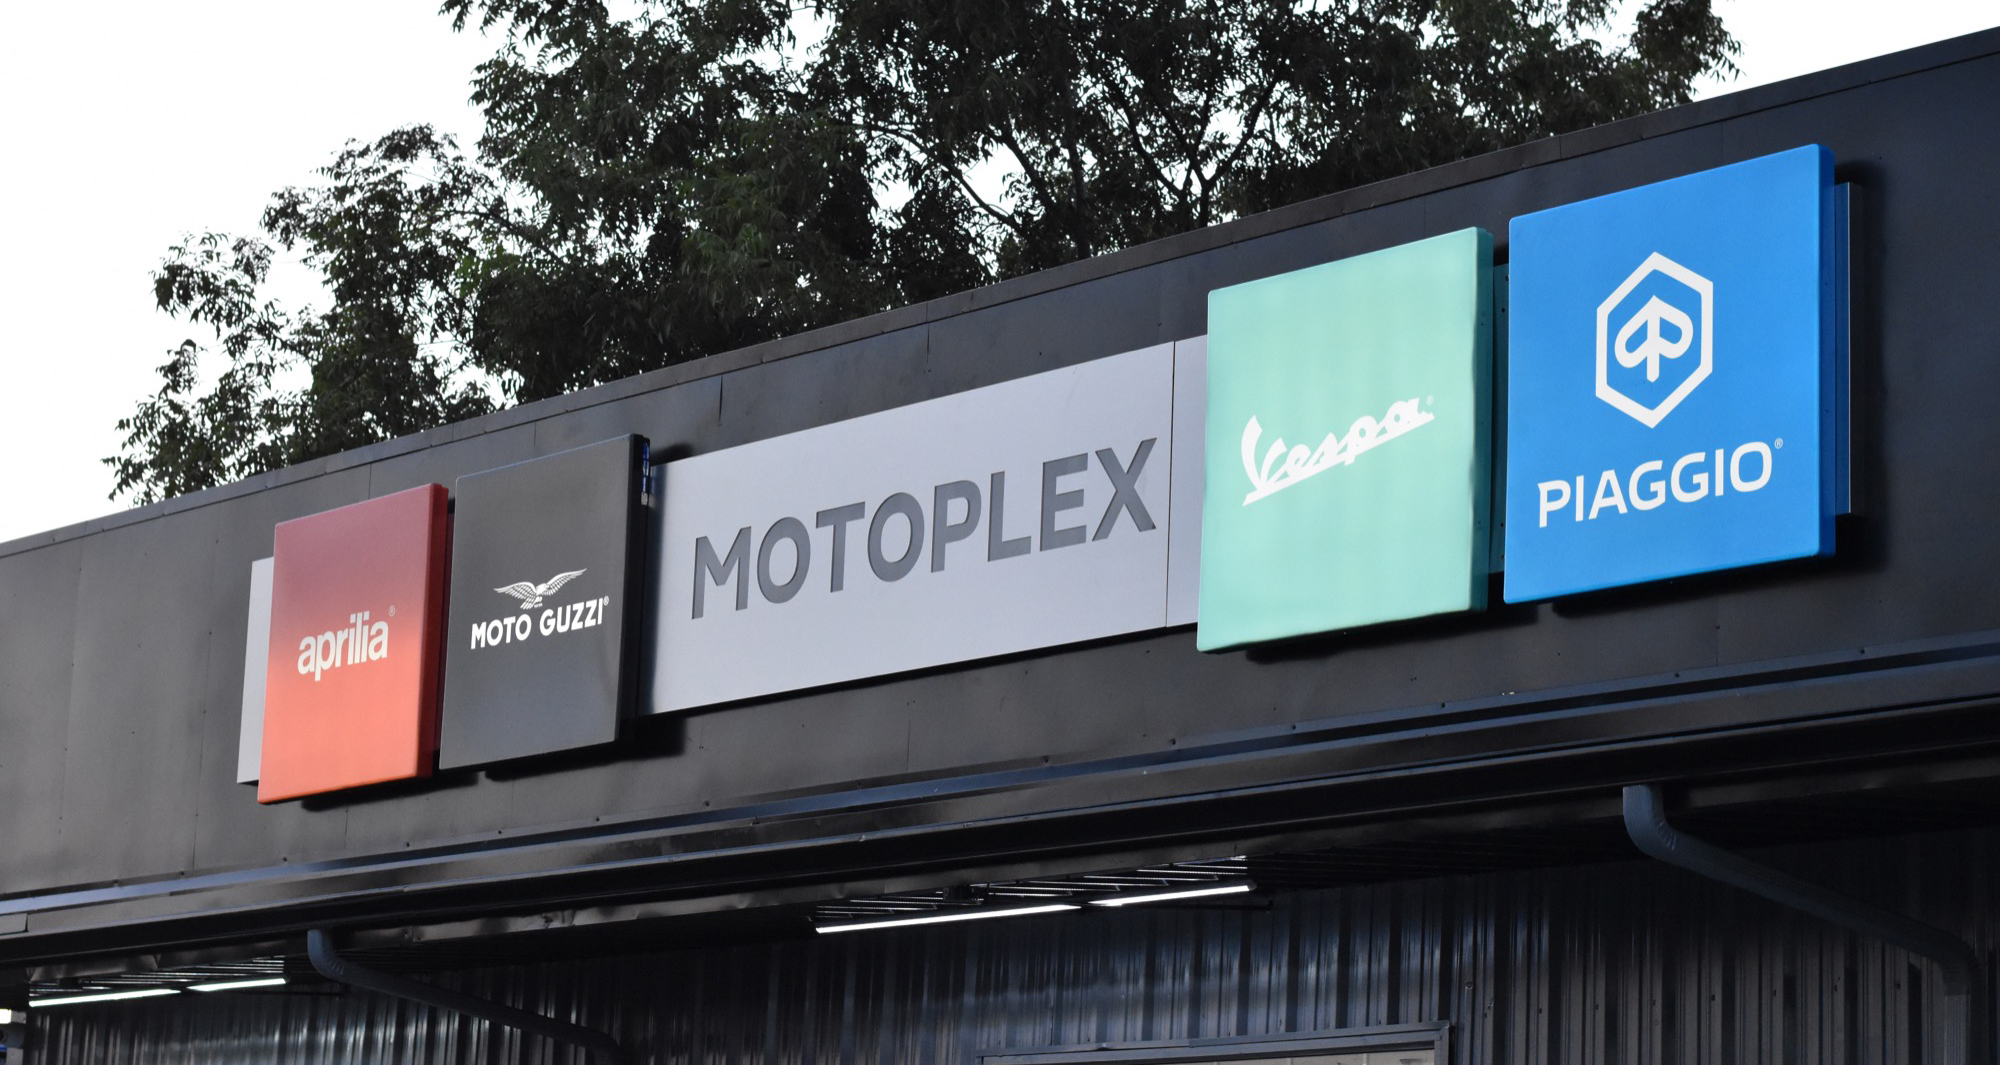 Piaggio MotoPlex adds Atlanta dealership location